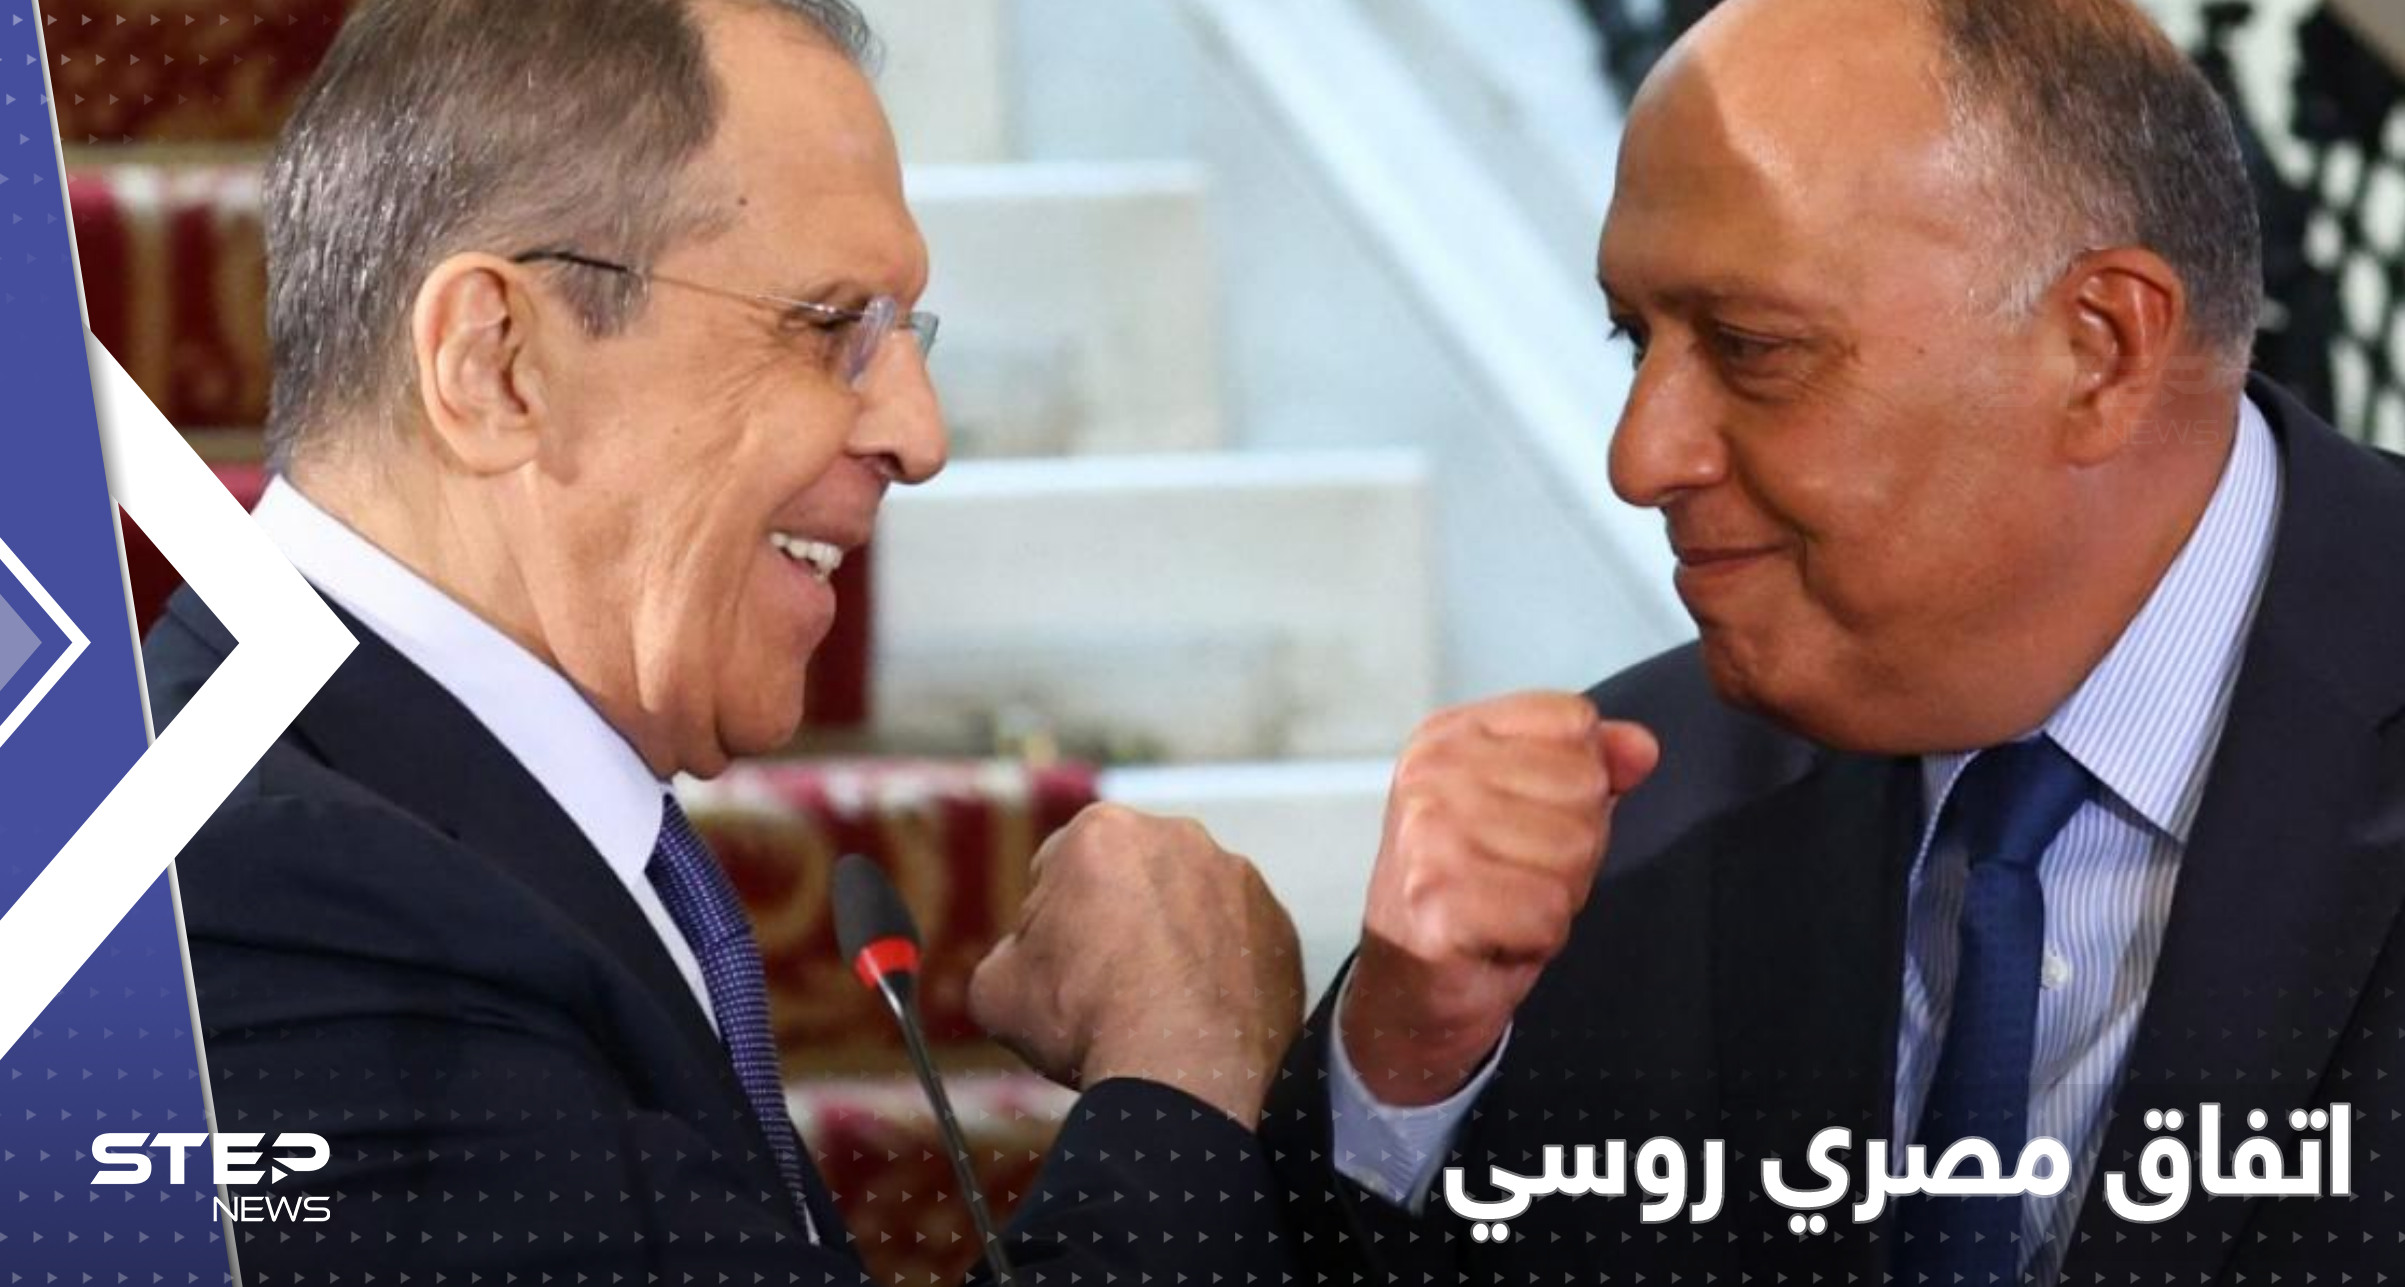 توافق بين مصر وروسيا حول ملفات مهمة بينها سوريا وليبيا.. شكري ولافروف يكشفون التفاصيل 